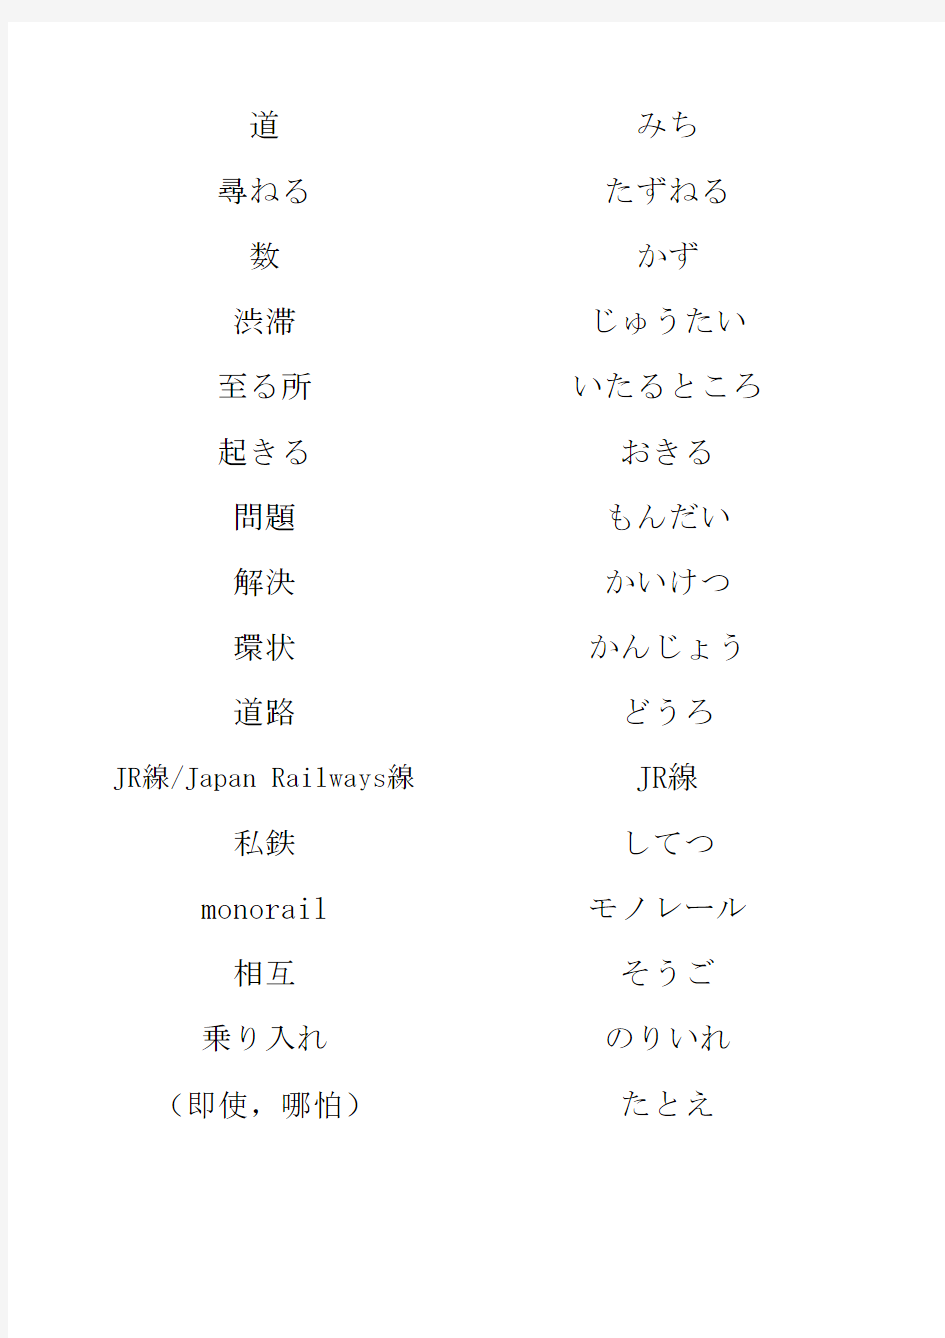 日语精读单词 上外教材 第15课